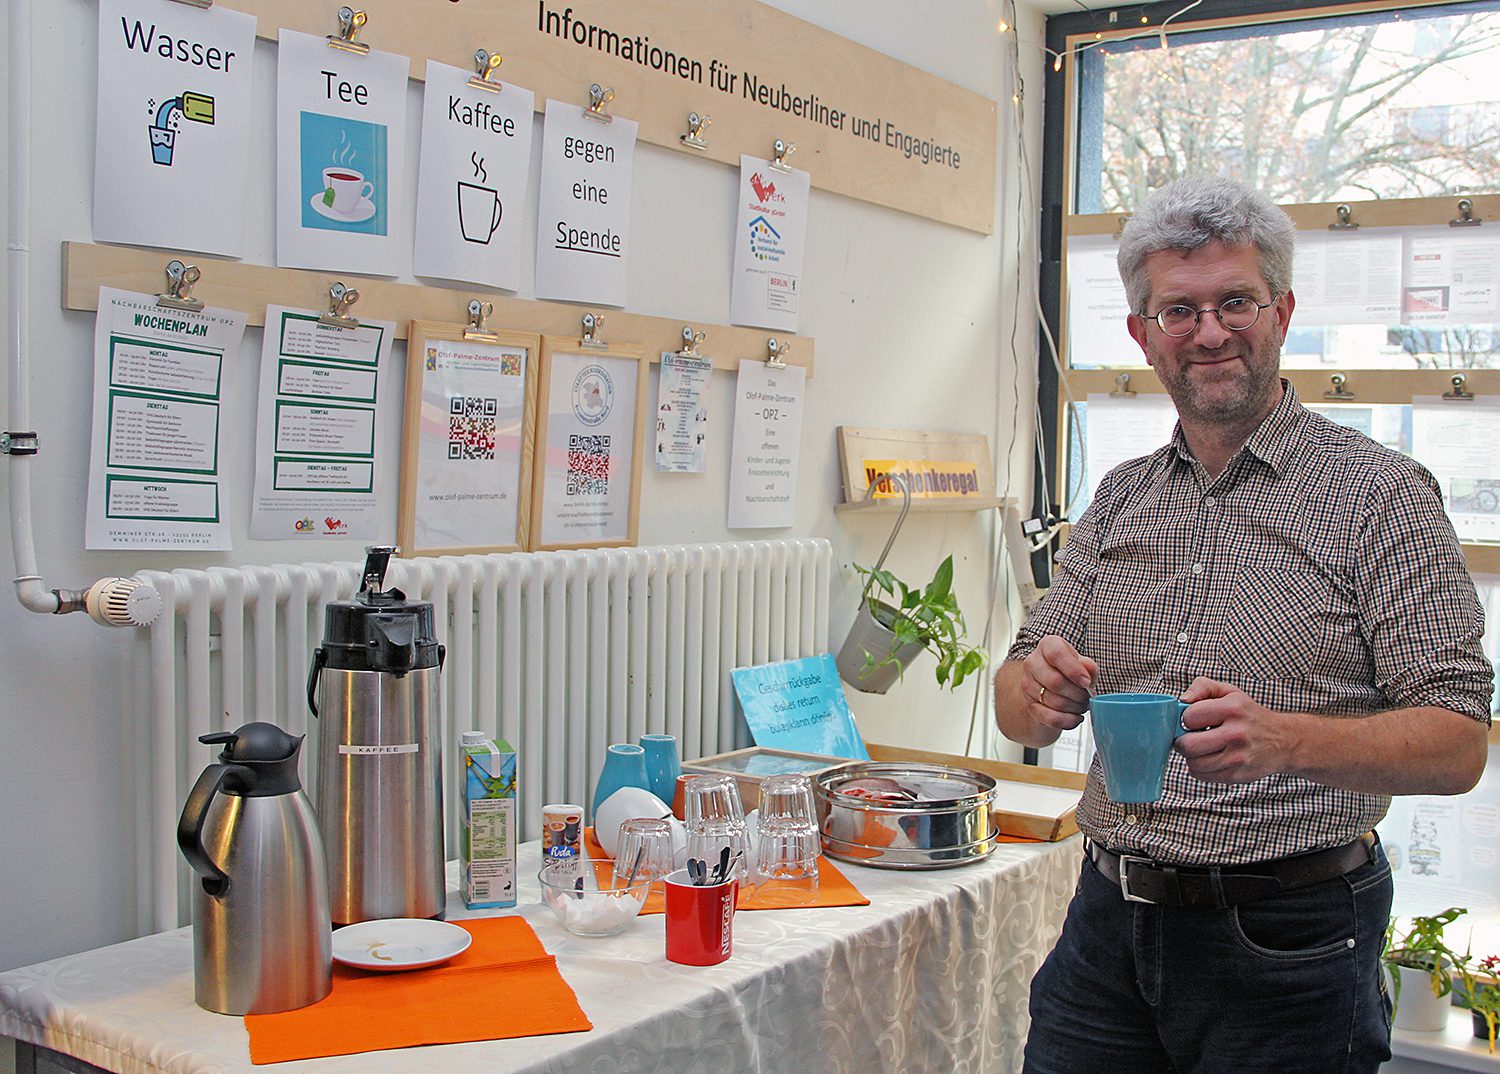 Jochen Uhländer vom Olof-Palme-Zentrum bietet einen warmen Ort, warme Worte, Tee und Kaffee an. Foto: Hensel